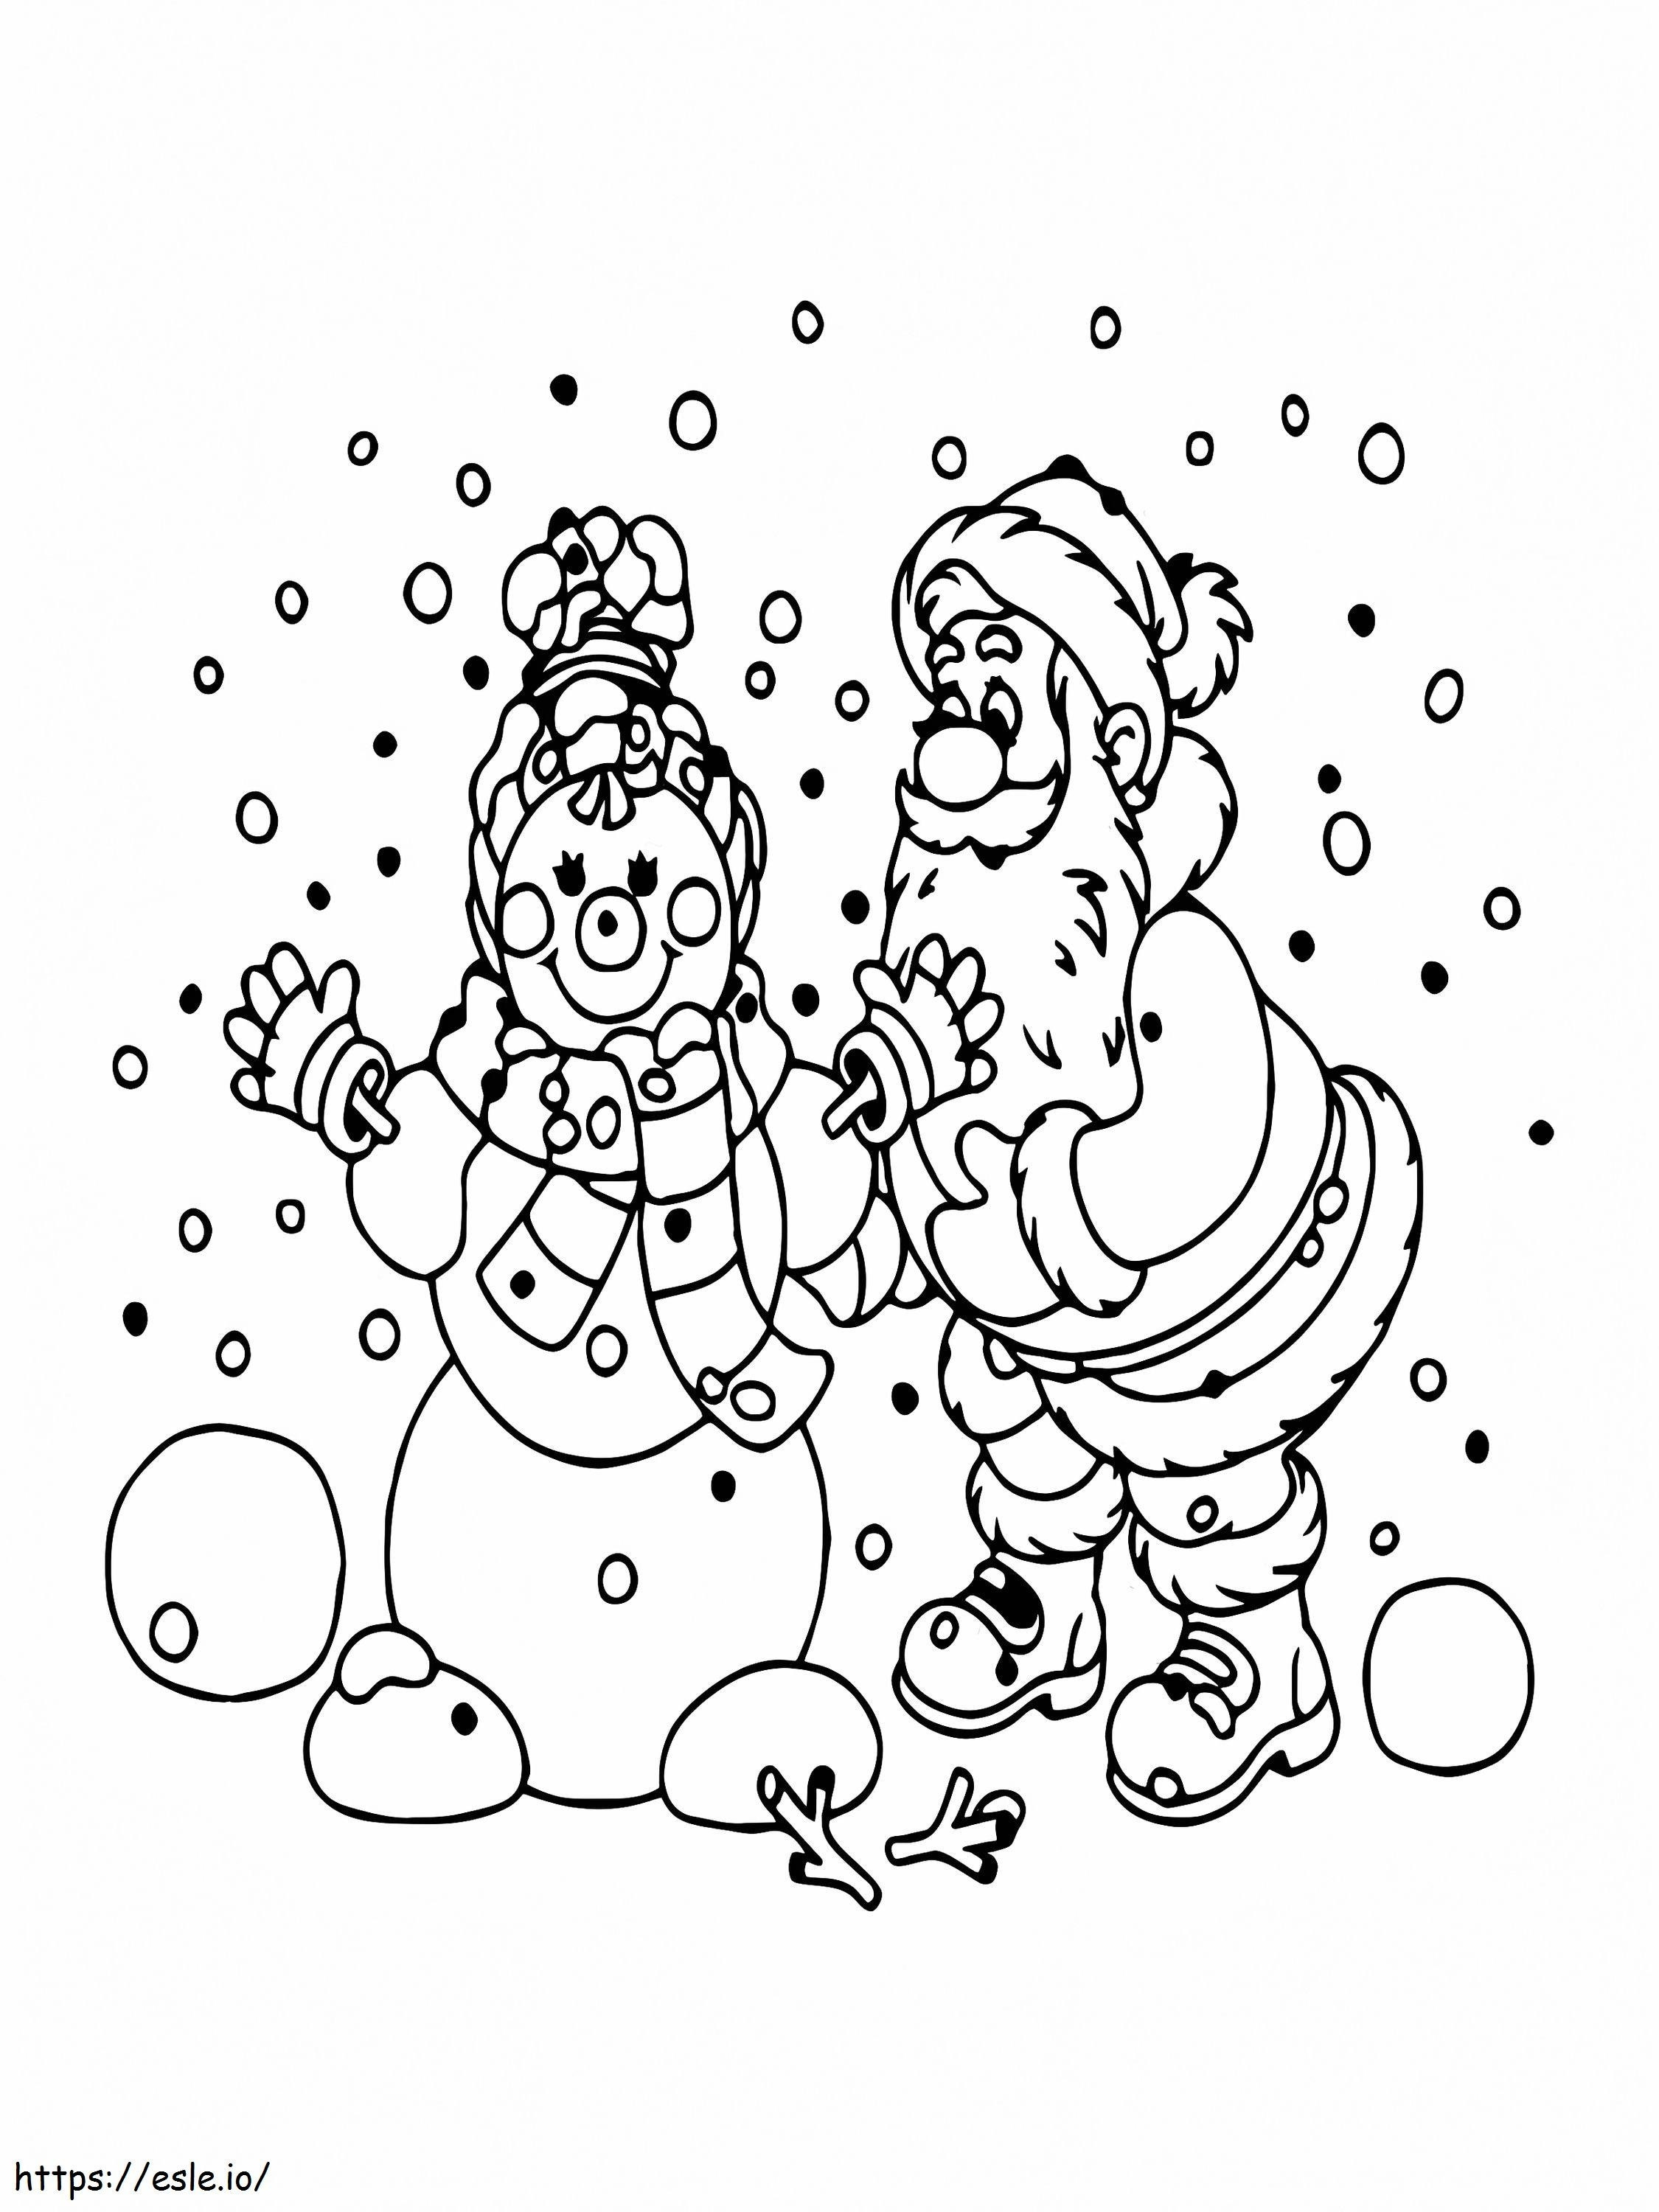 Weihnachtsmann und Schneemann ausmalbilder